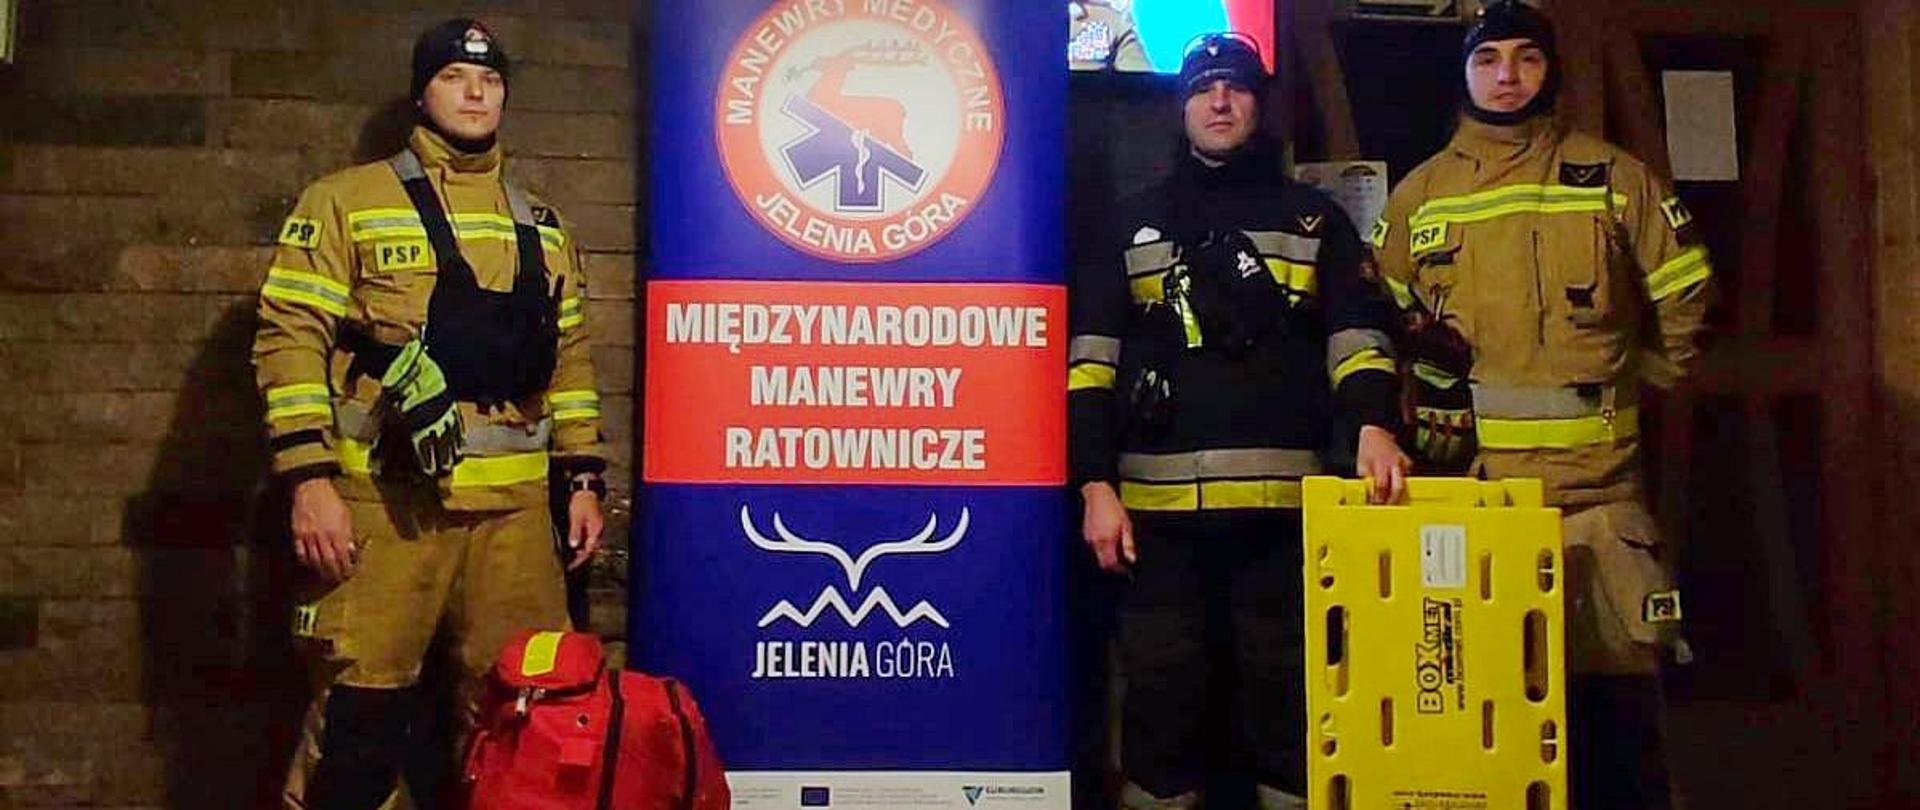 Zdjęcie przedstawia trzech funkcjonariuszy KM PSP w Sosnowcu oraz rolap z grafiką oraz napisem „Międzynarodowe manewry ratownicze Jelenia Góra”